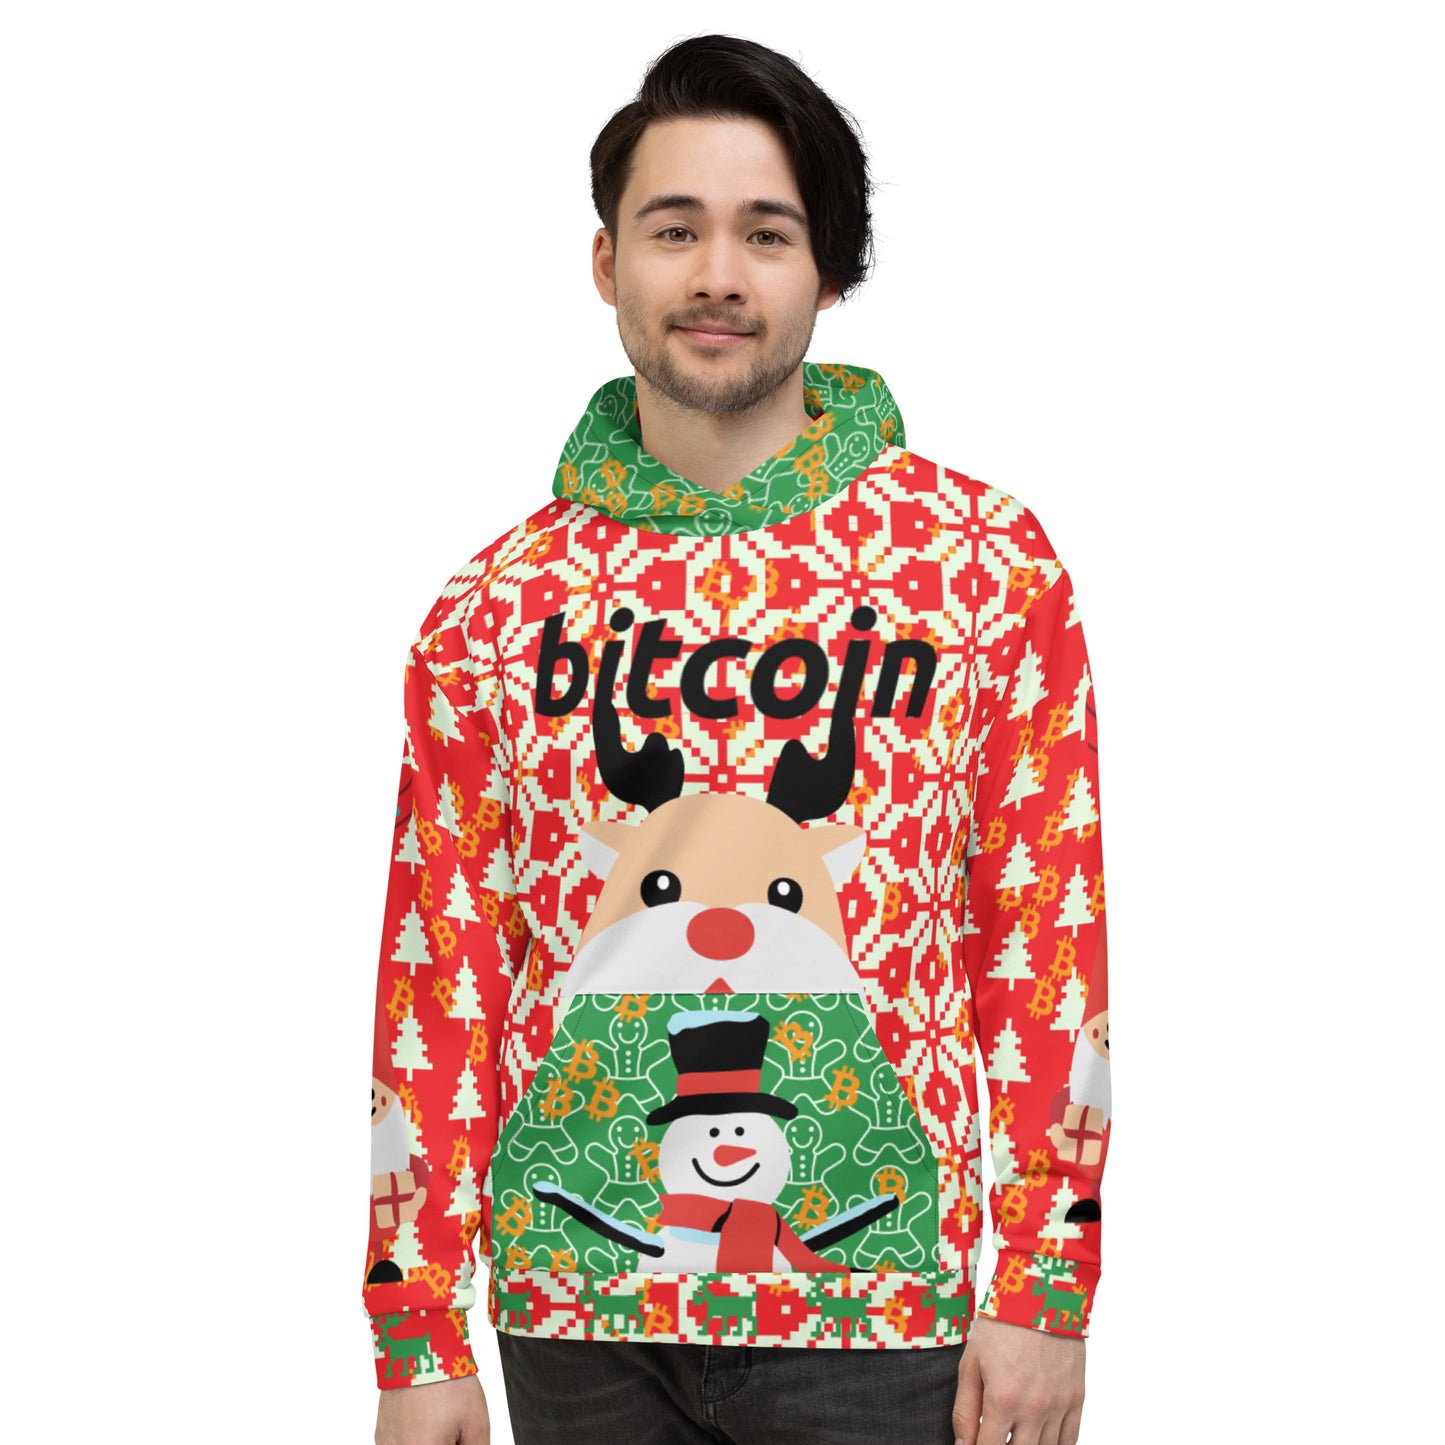 Bitcoin Christmas Ugly Hoodie